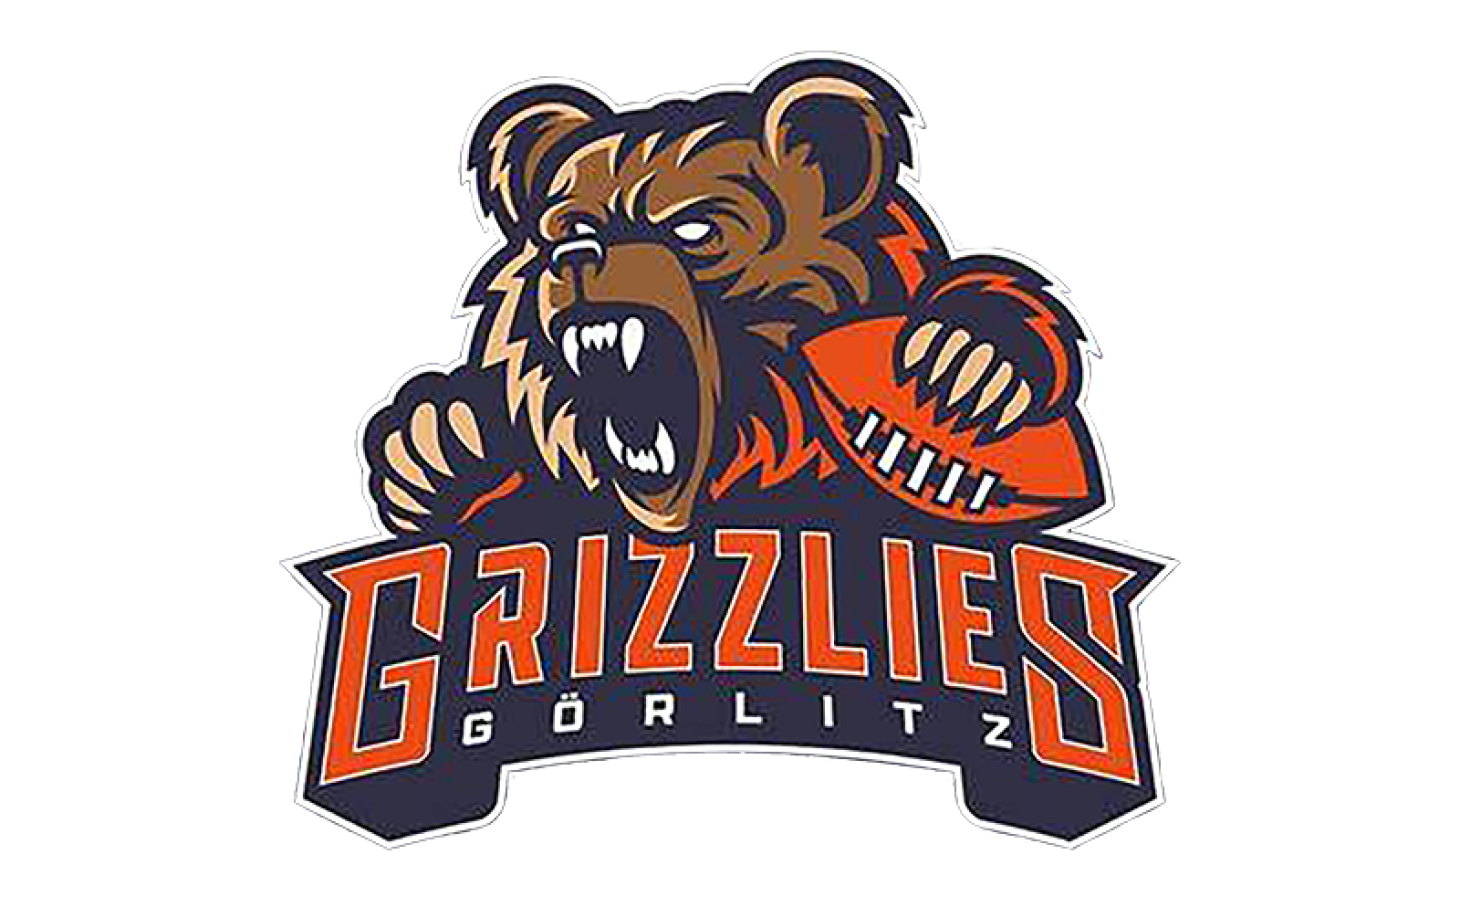 Grizzlies Goerlitz